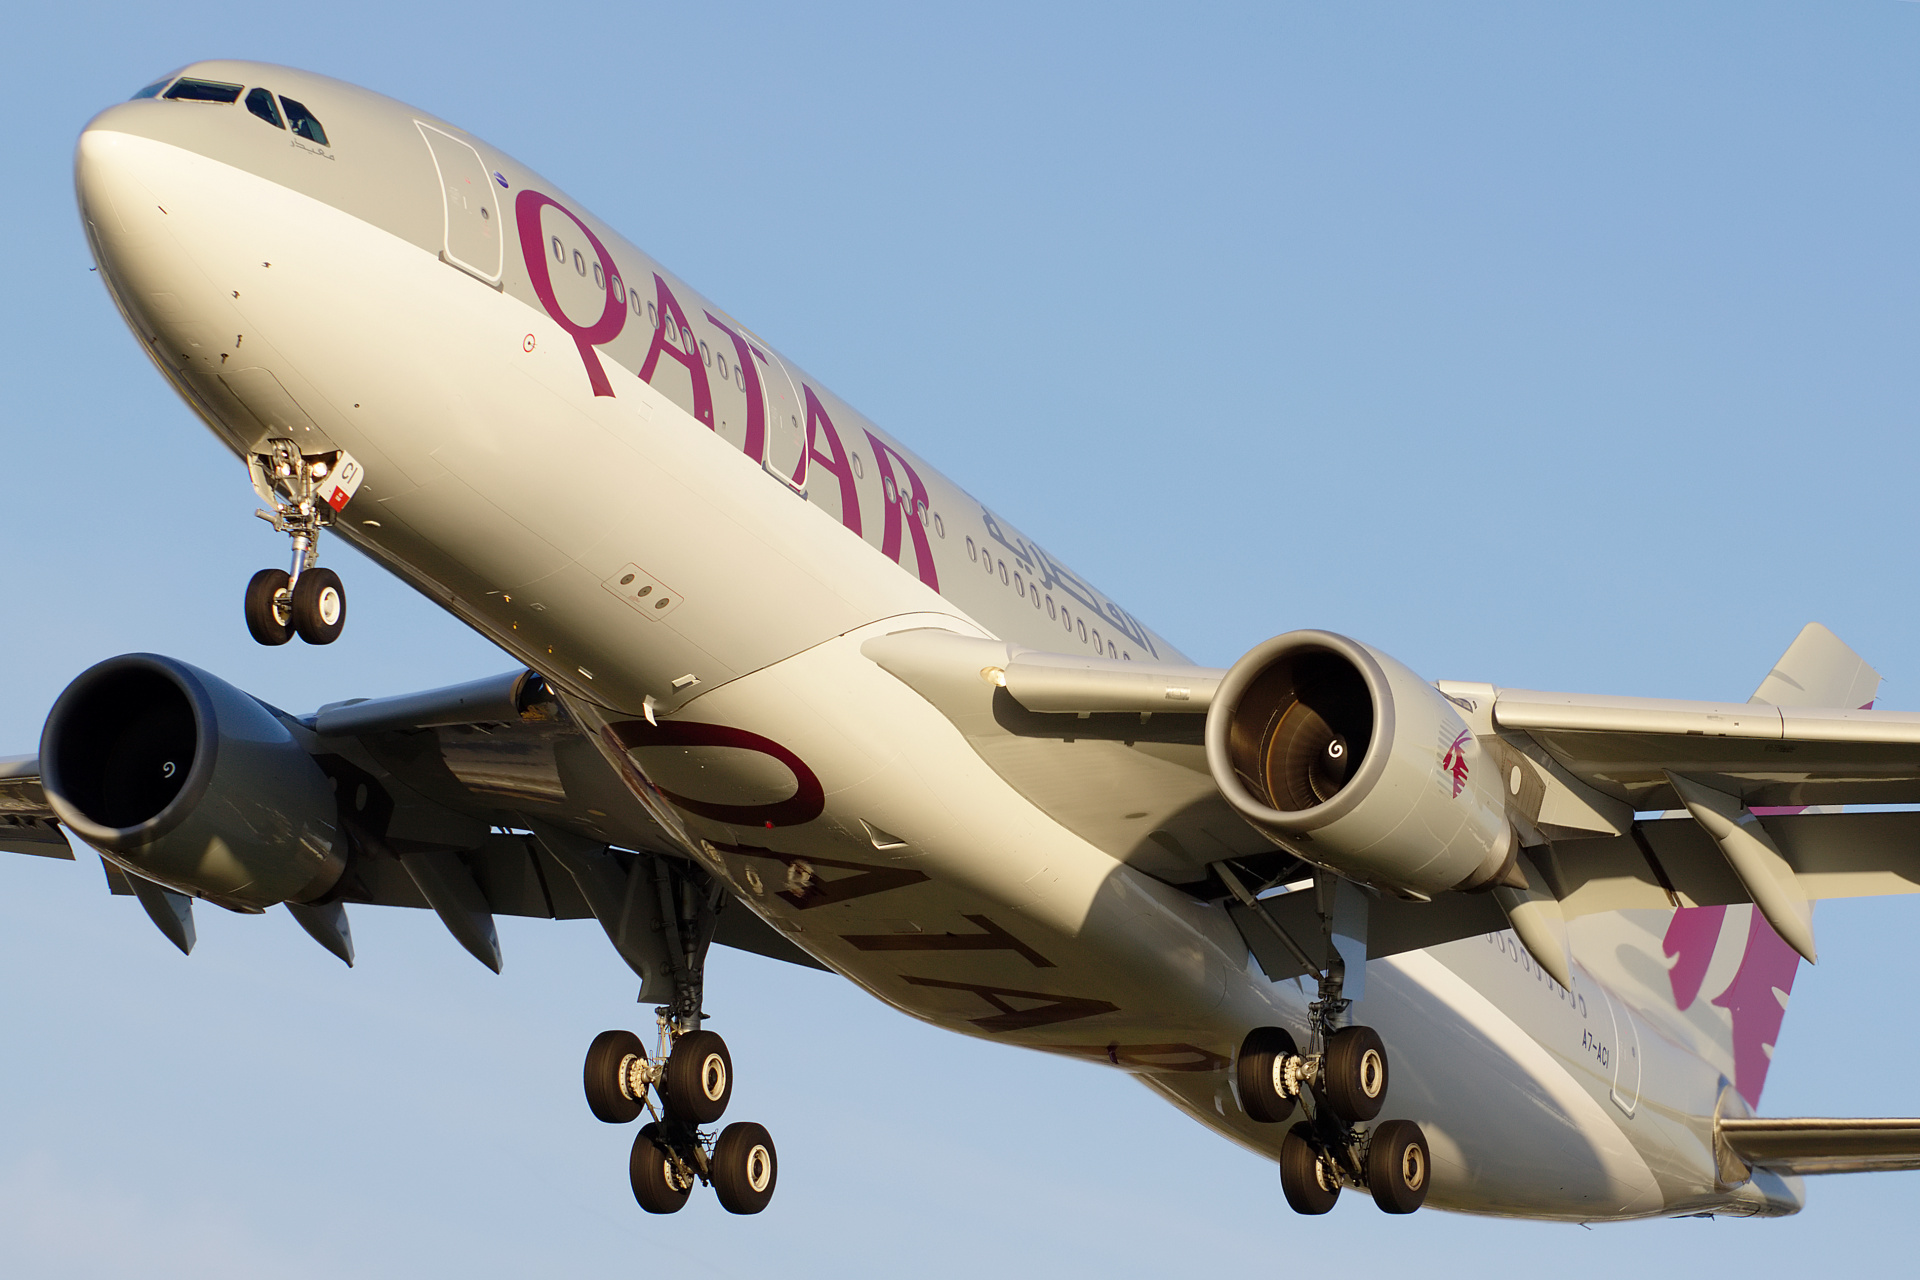 A7-ACI (Aircraft » EPWA Spotting » Airbus A330-200 » Qatar Airways)